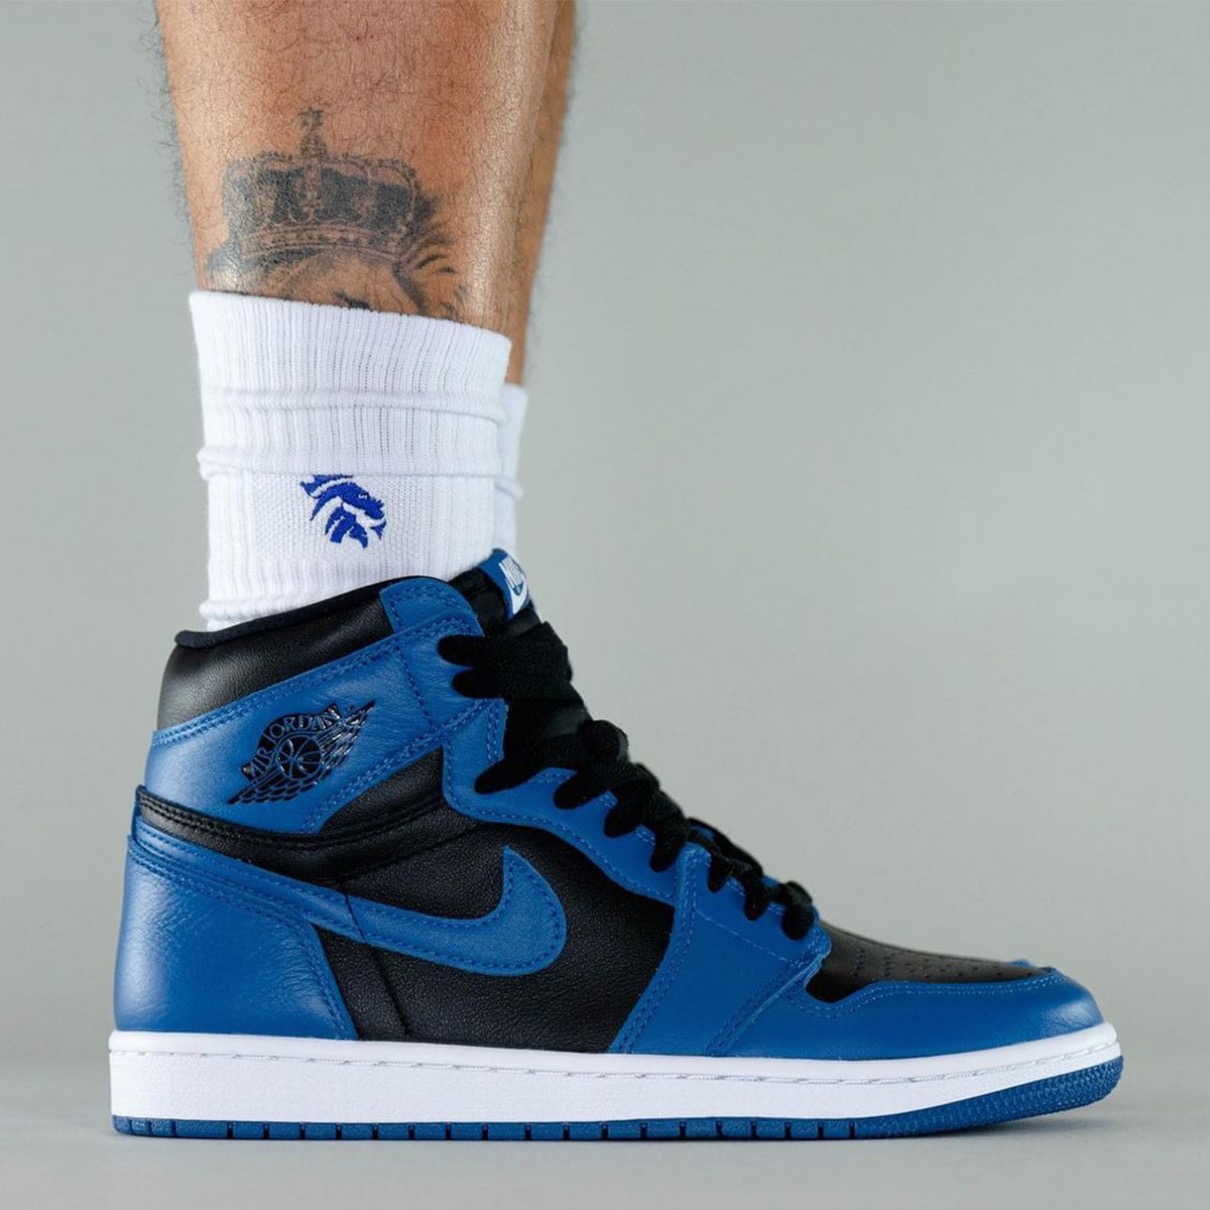 Nike】Air Jordan 1 Retro High OG “Dark Marina Blue”が国内2月5日に